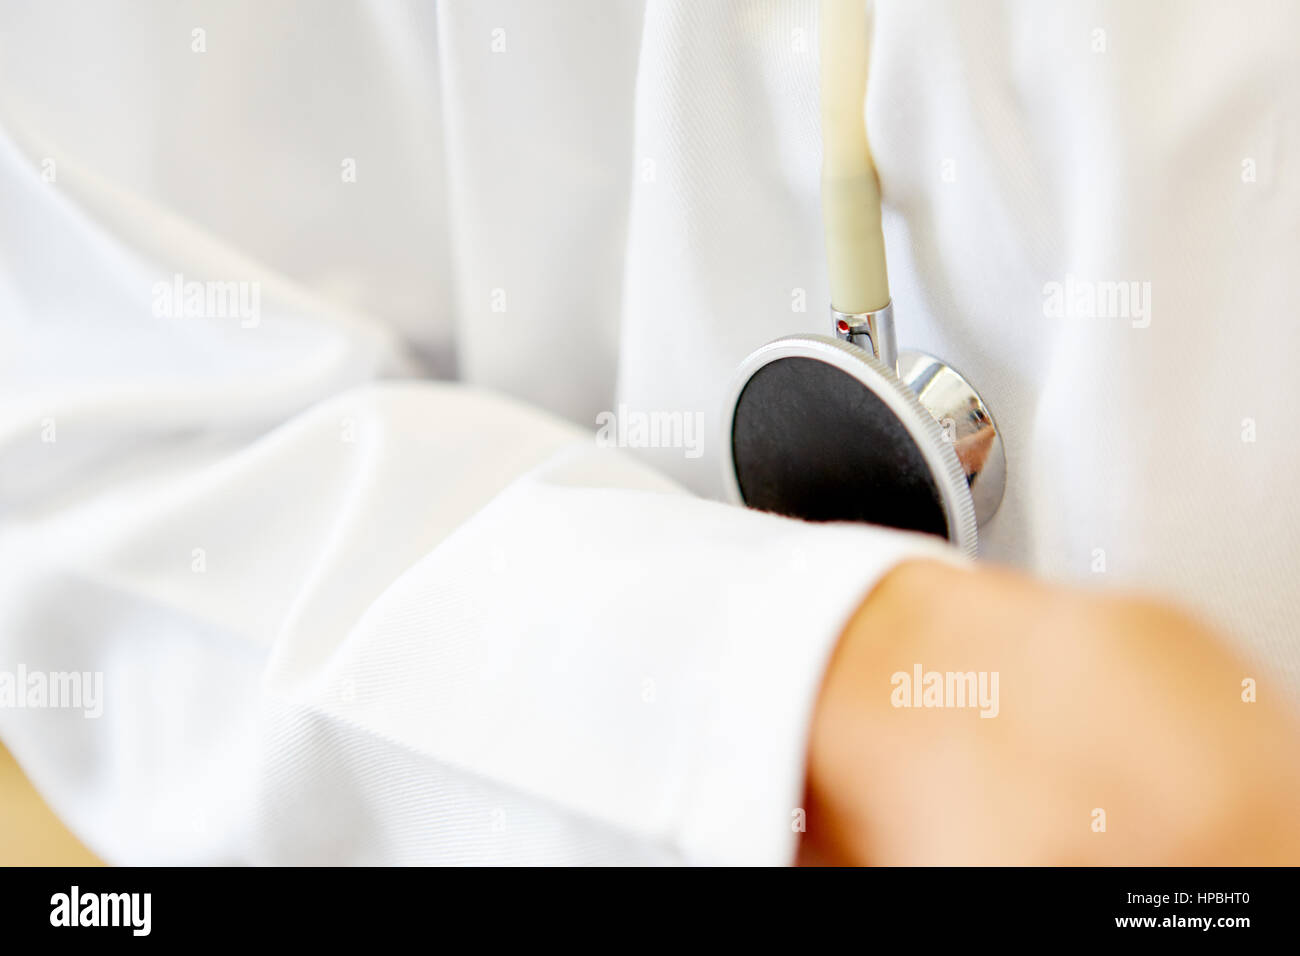 Stethoskop als medizinisches Instrument für kardiologische Untersuchung diagnostizieren Stockfoto